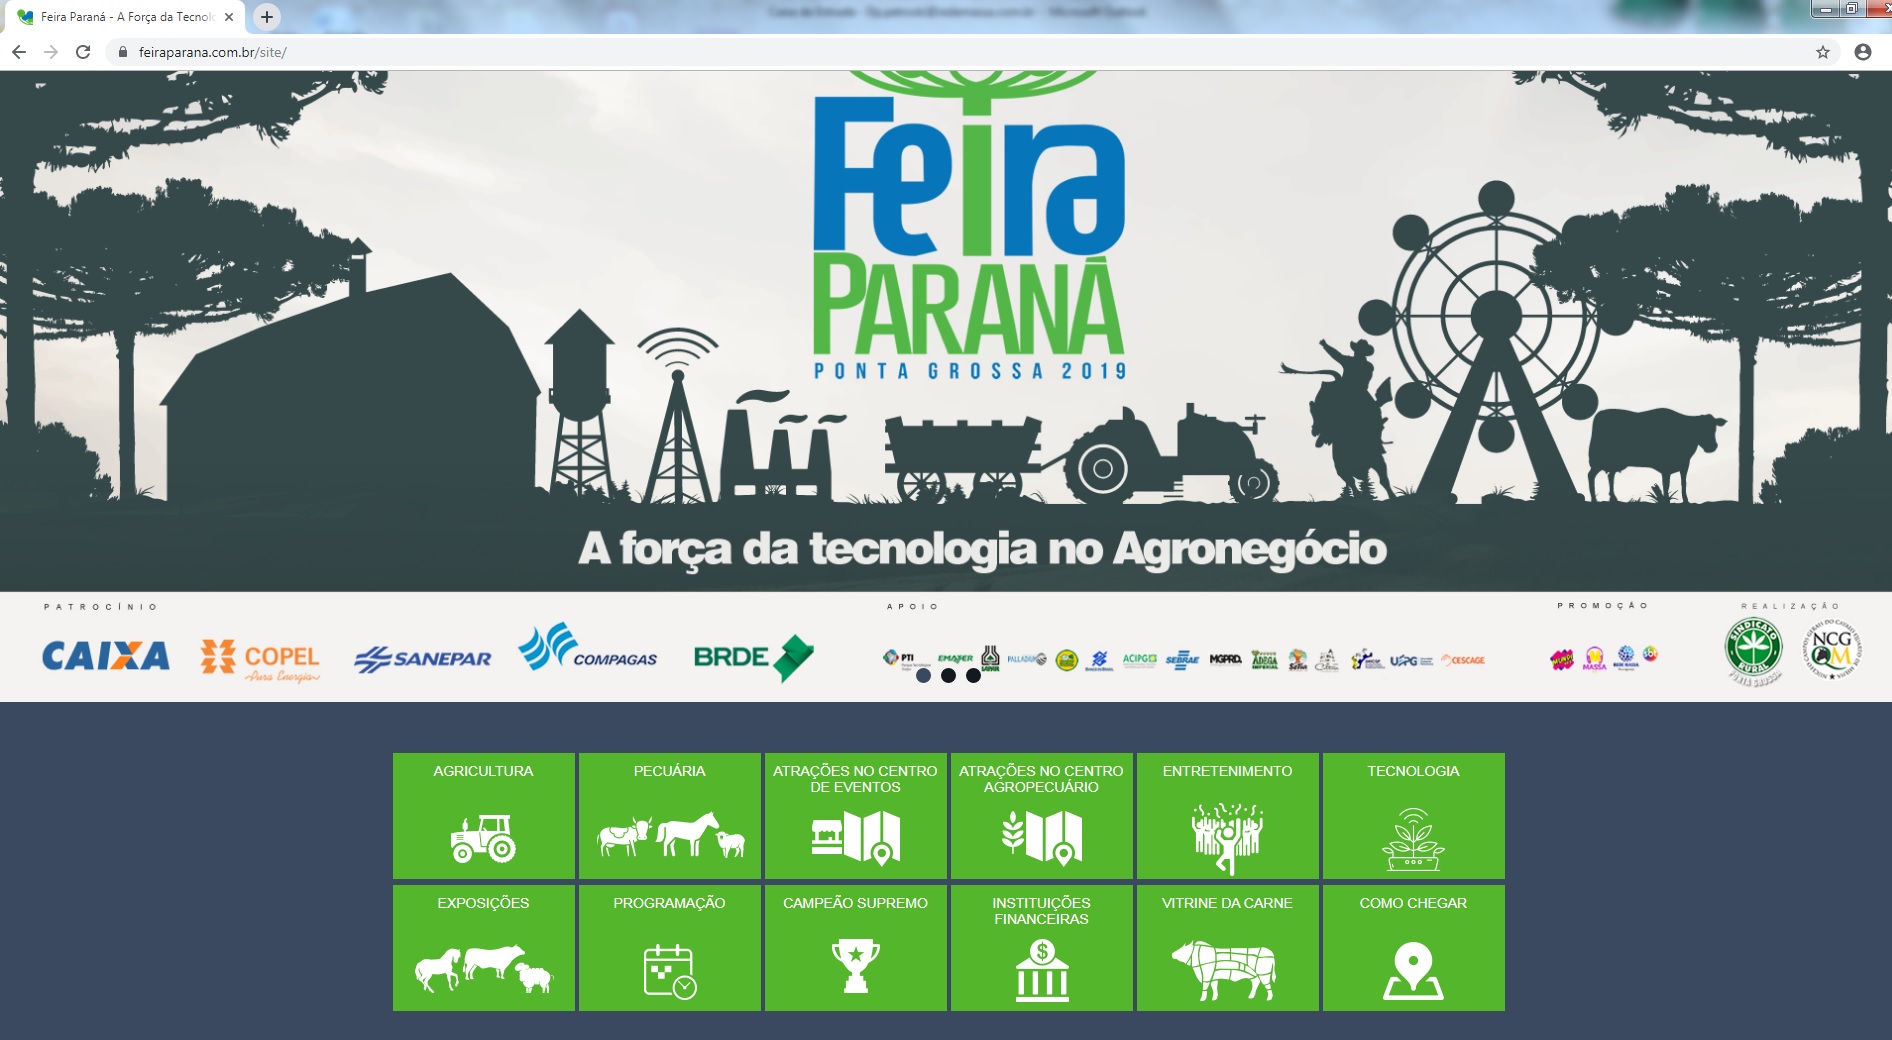 Feira Paraná lança site com informações do evento